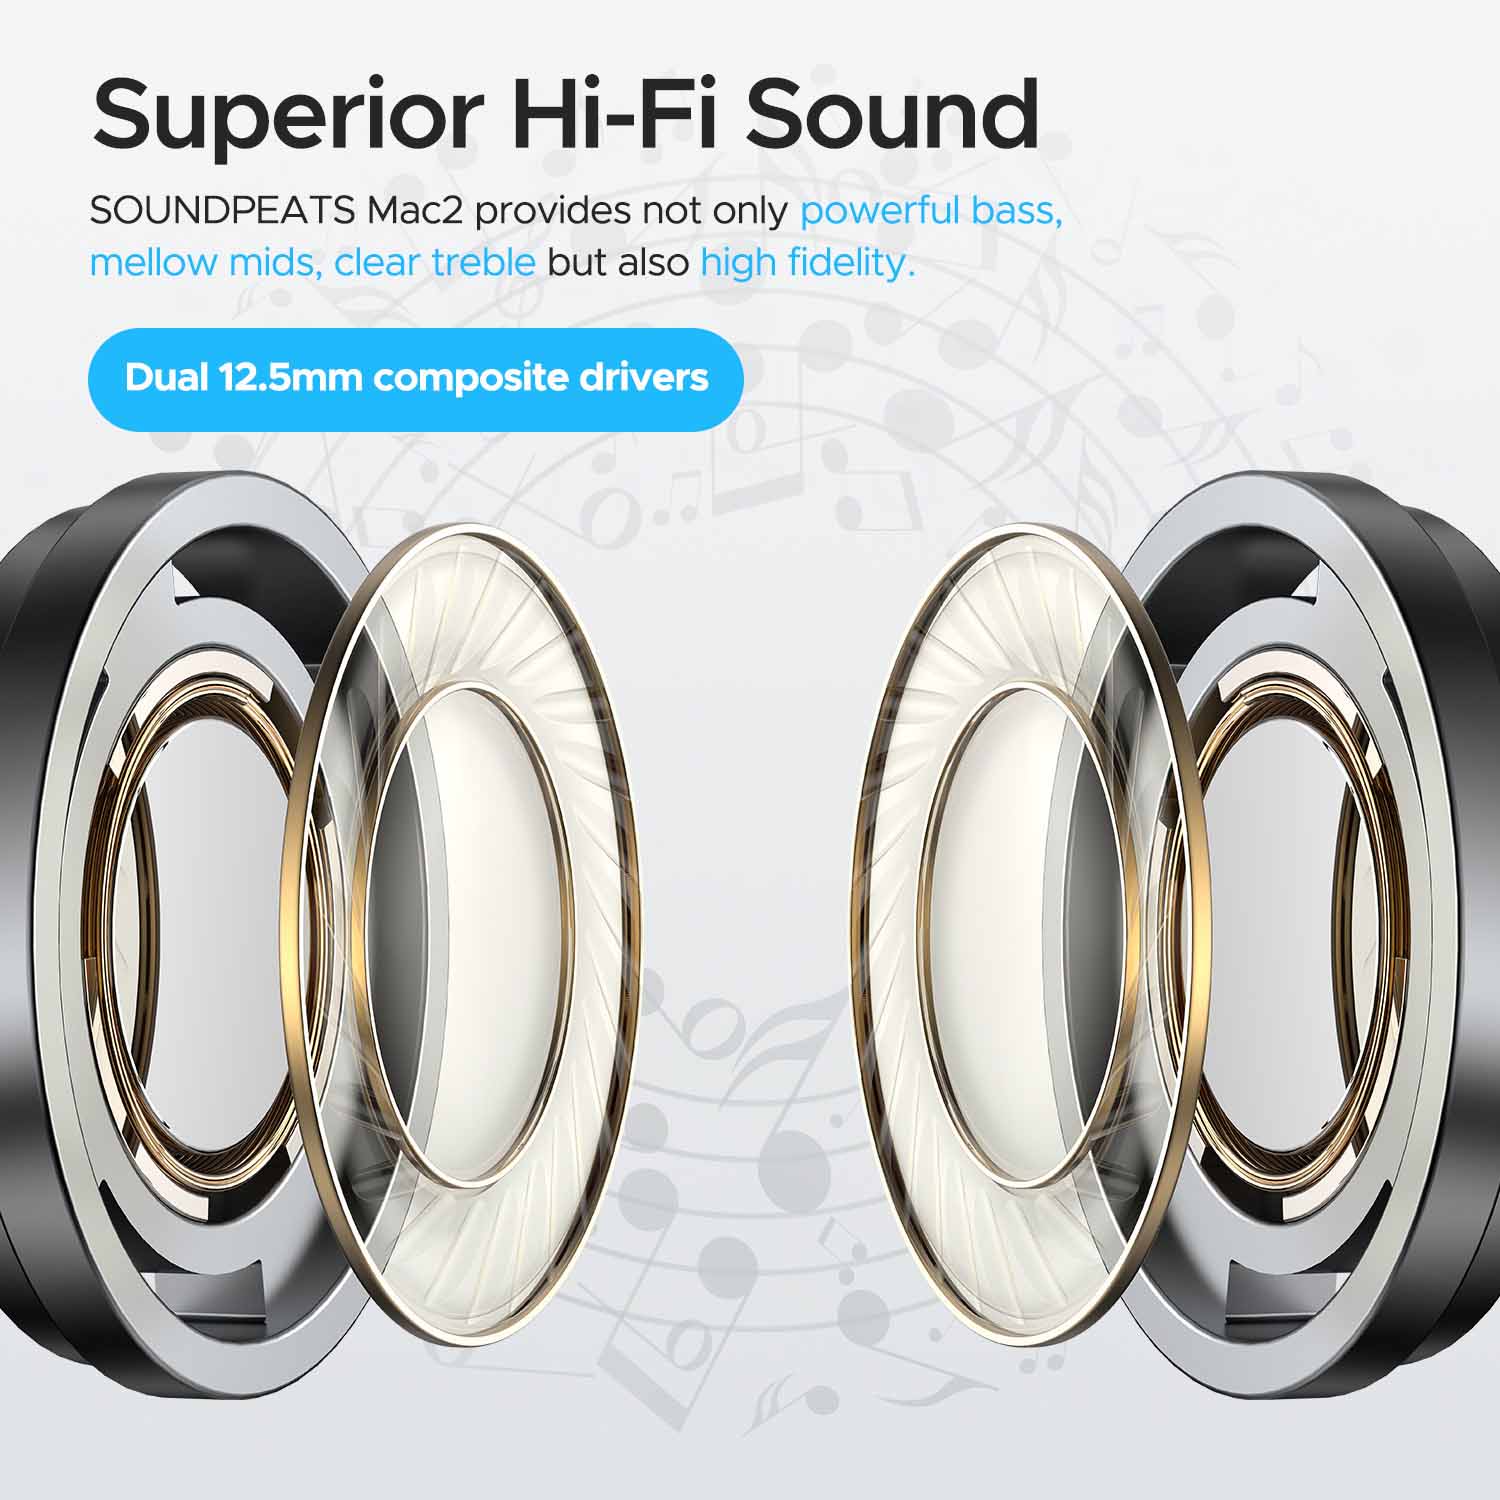 SoundPEATS Mac 2 True Wireless Earbuds 3 1